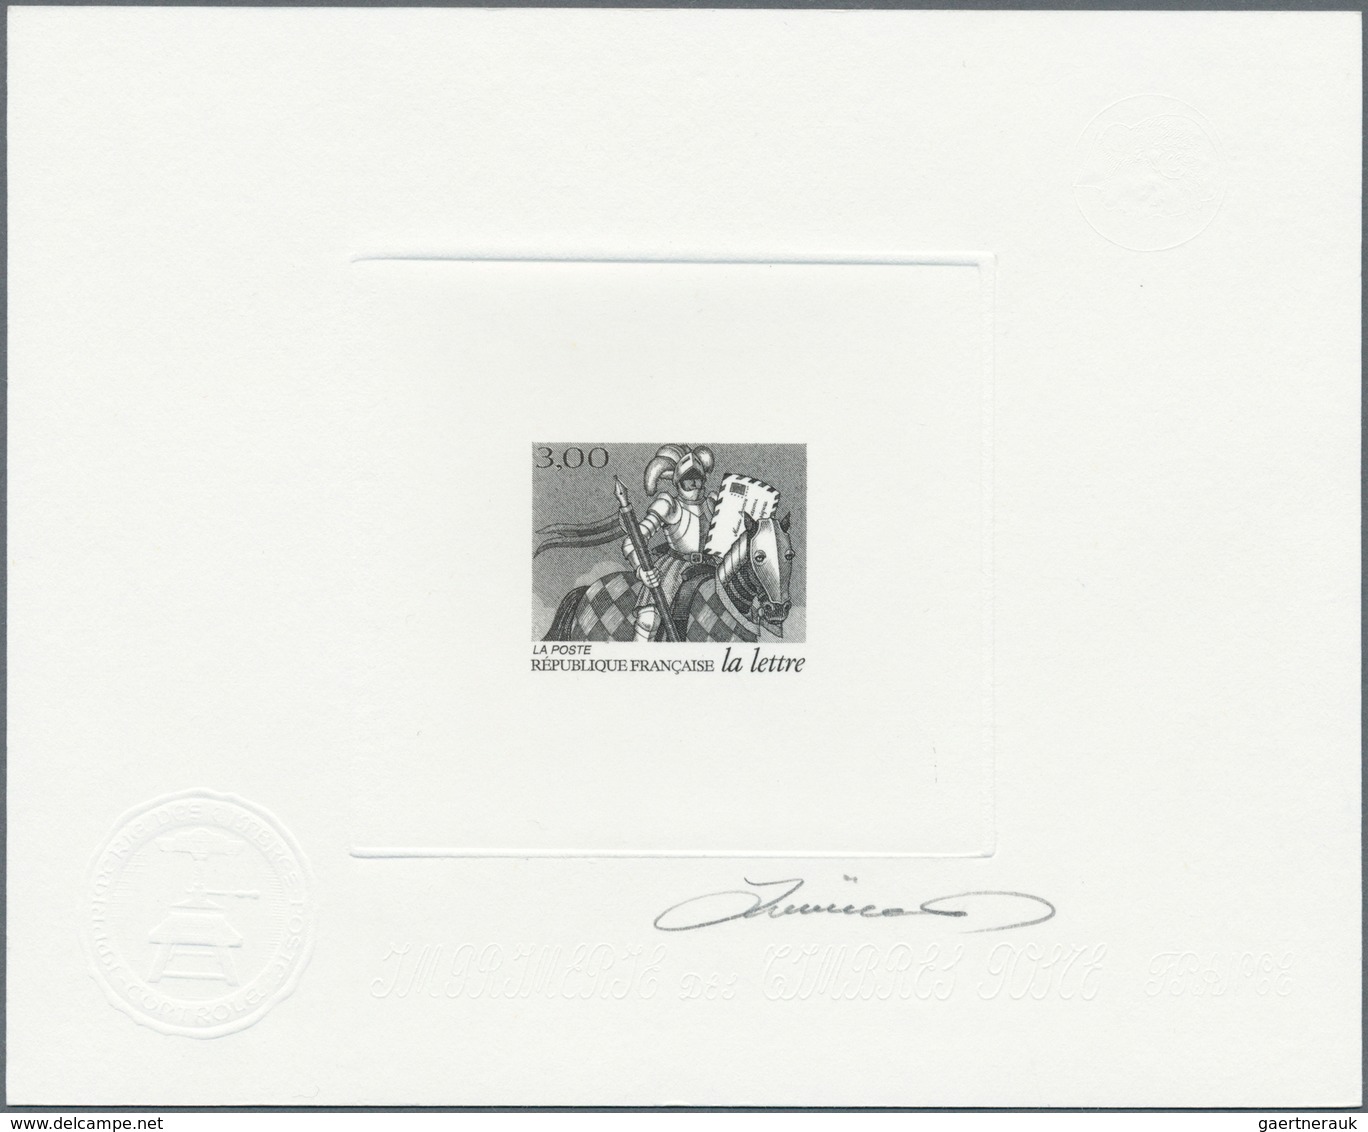 13909 Frankreich: 1998. Lot of 6 Epreuves d'artiste signée in black for complete set "Historic Letters". (